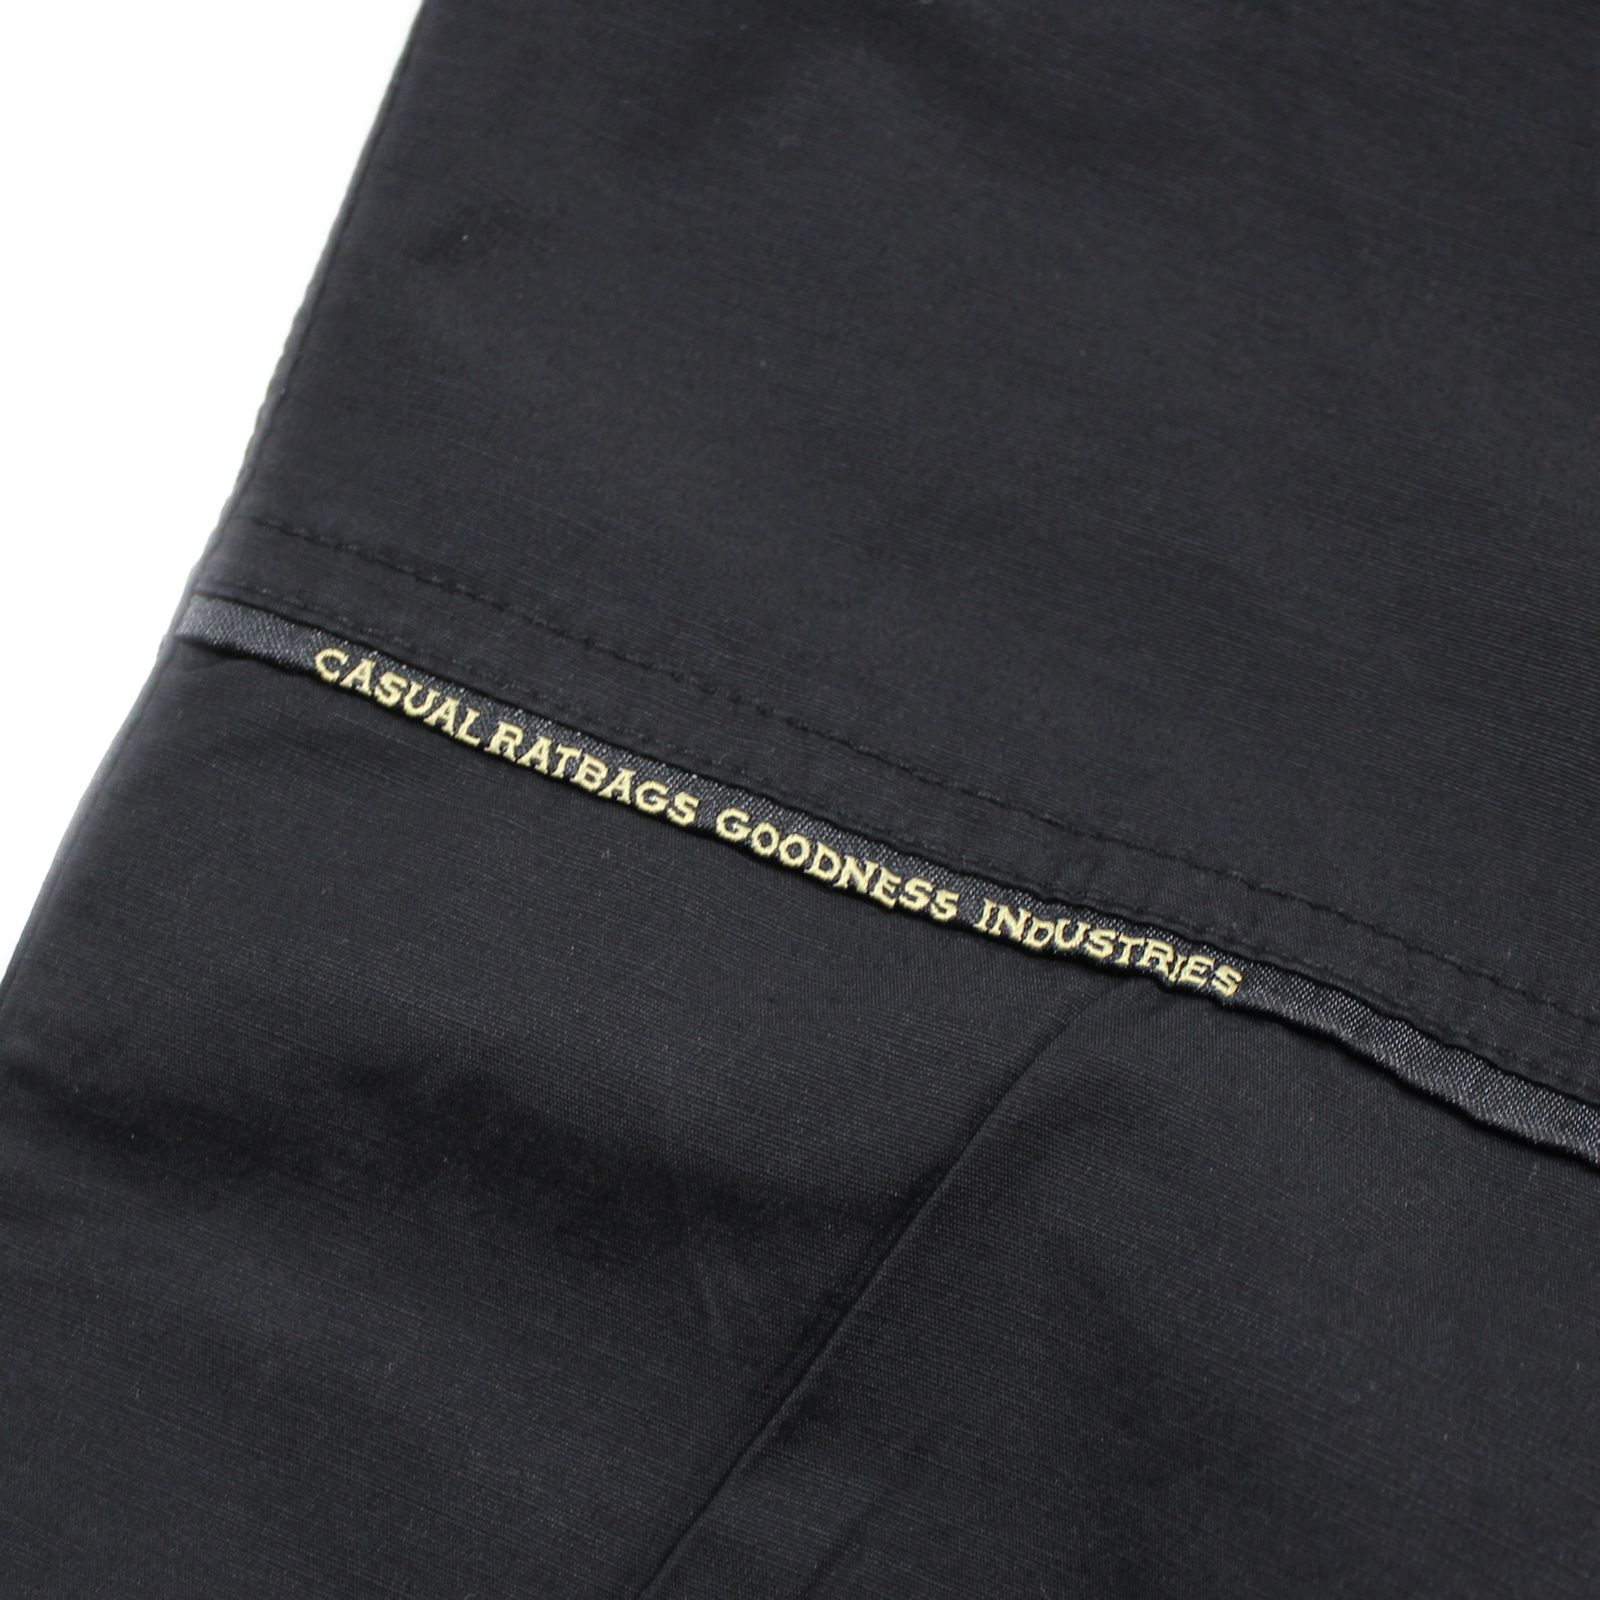 Kalhoty GOODNESS Industries LUCA 1230 - ern - Kliknutm na obrzek zavete